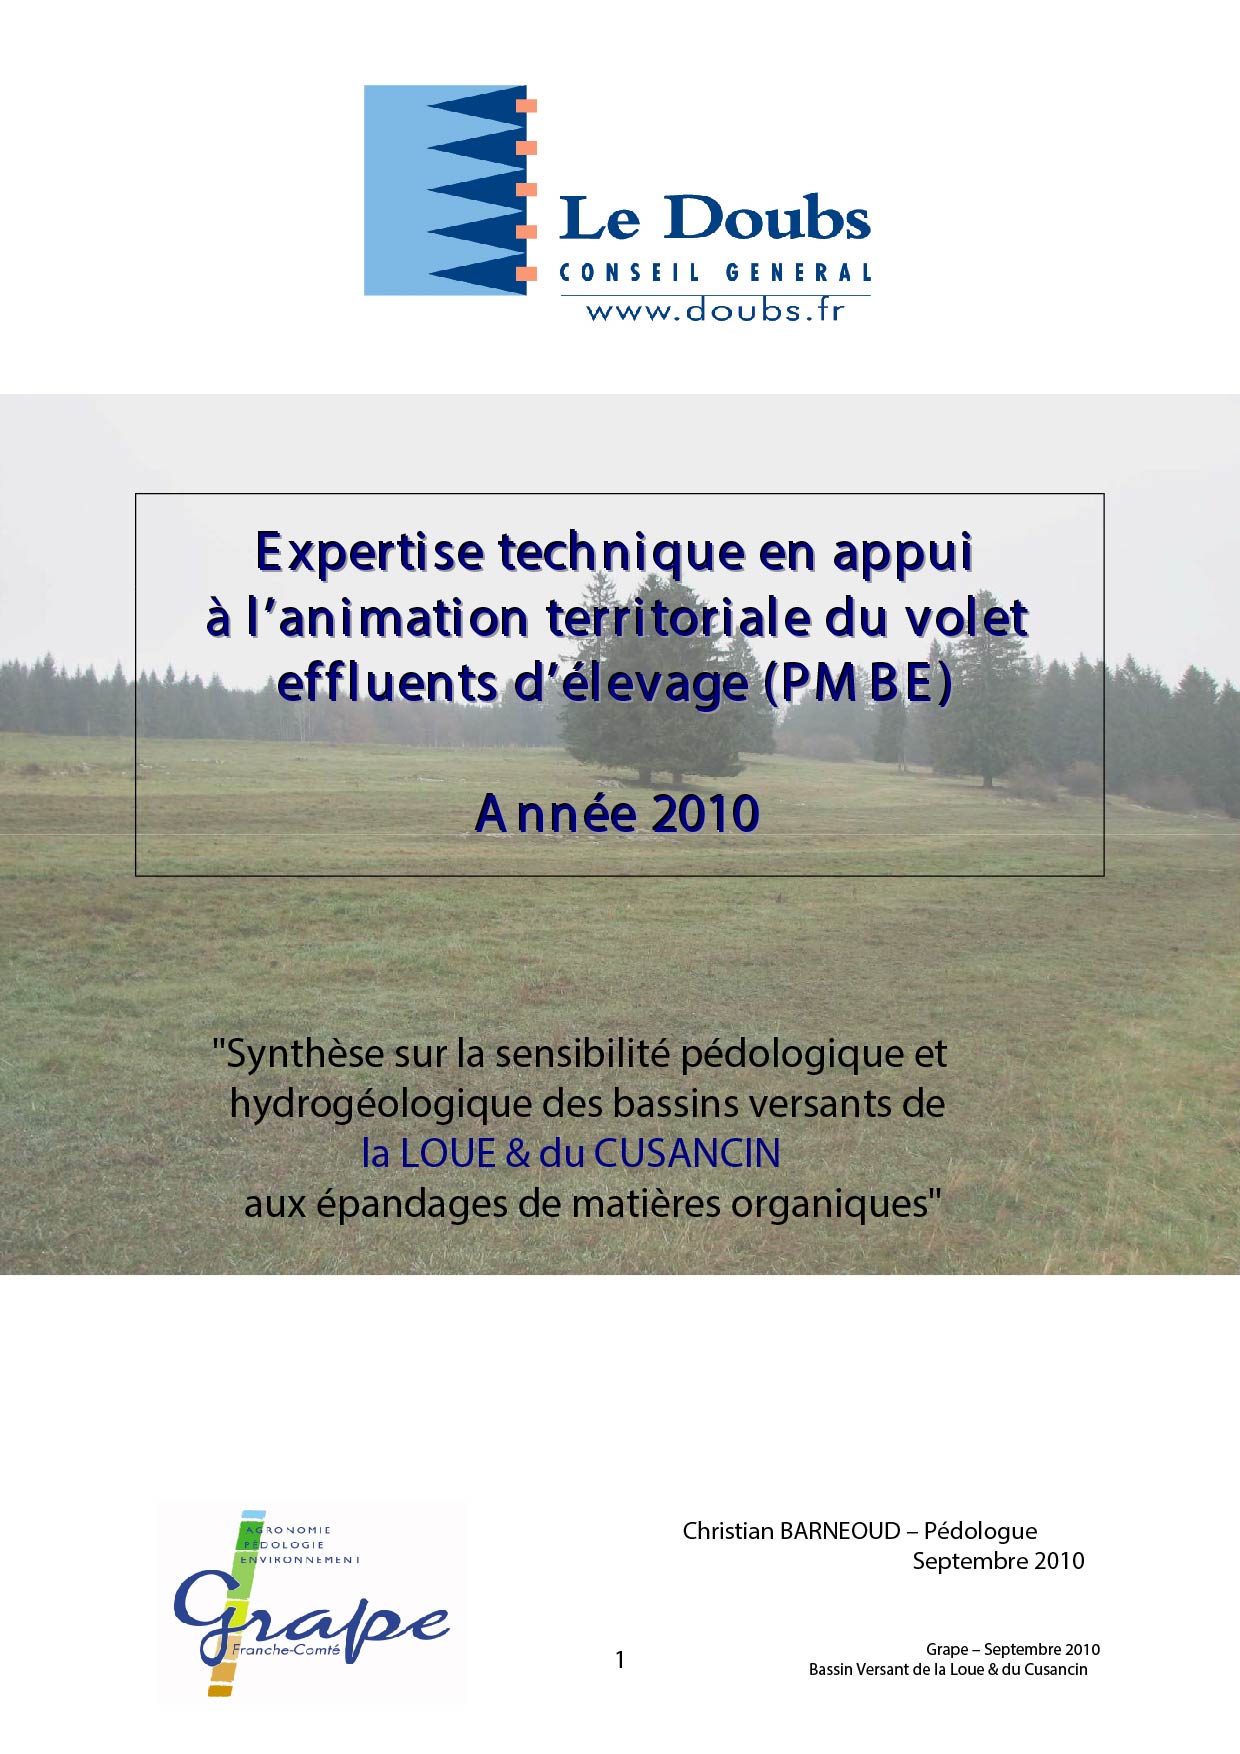 Expertise technique en appui à l’animation territoriale du volet effluents d’élevage (PMBE)